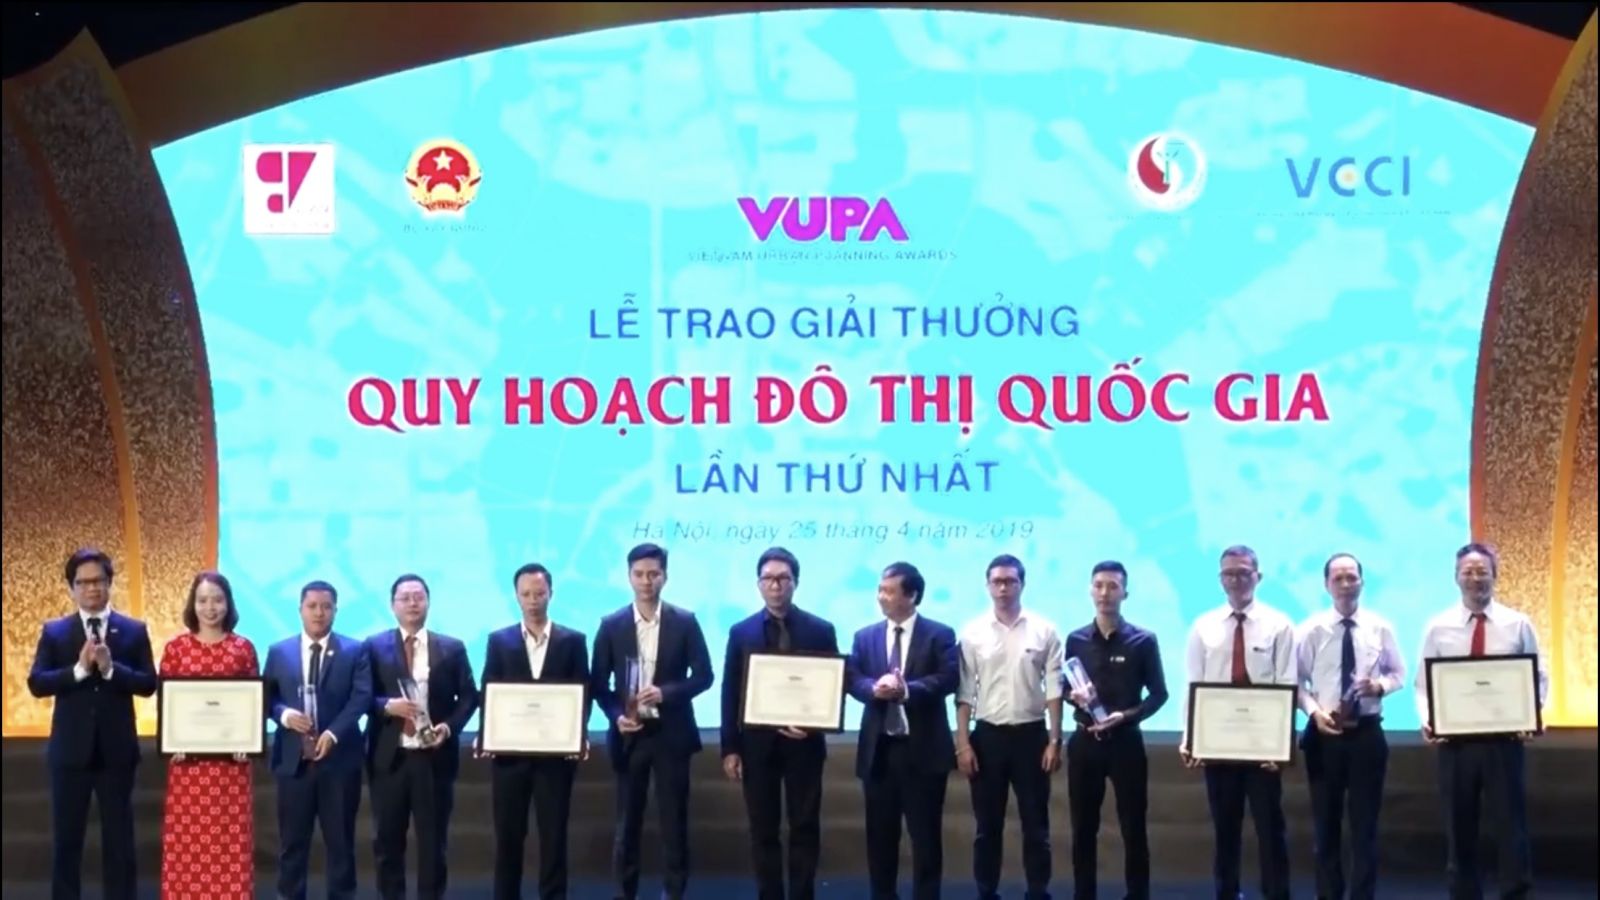 Ông Phạm Quốc Tuấn - Phó TGĐ Tập đoàn GFS (ngoài cùng bên phải)p/Ông Ngân Văn Chuyên - Phó TGĐ Tập đoàn GFS (thứ 2 từ phải sang) nhận giải thưởng